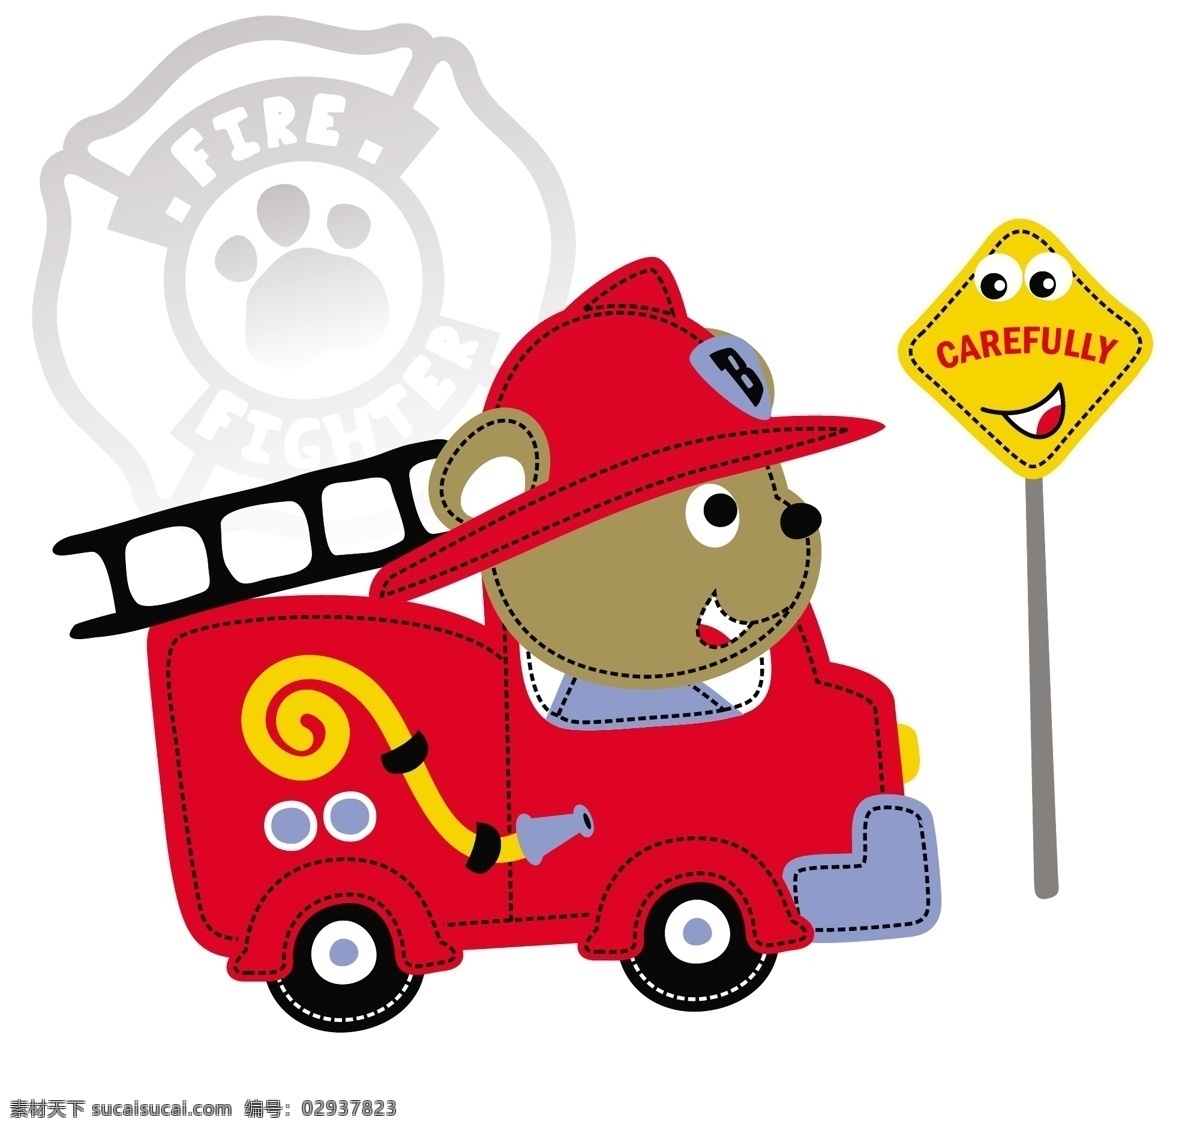 红色 小 卡车 熊 可爱 卡通 图 小卡车 小熊 小动物 儿童卡通 可爱卡通